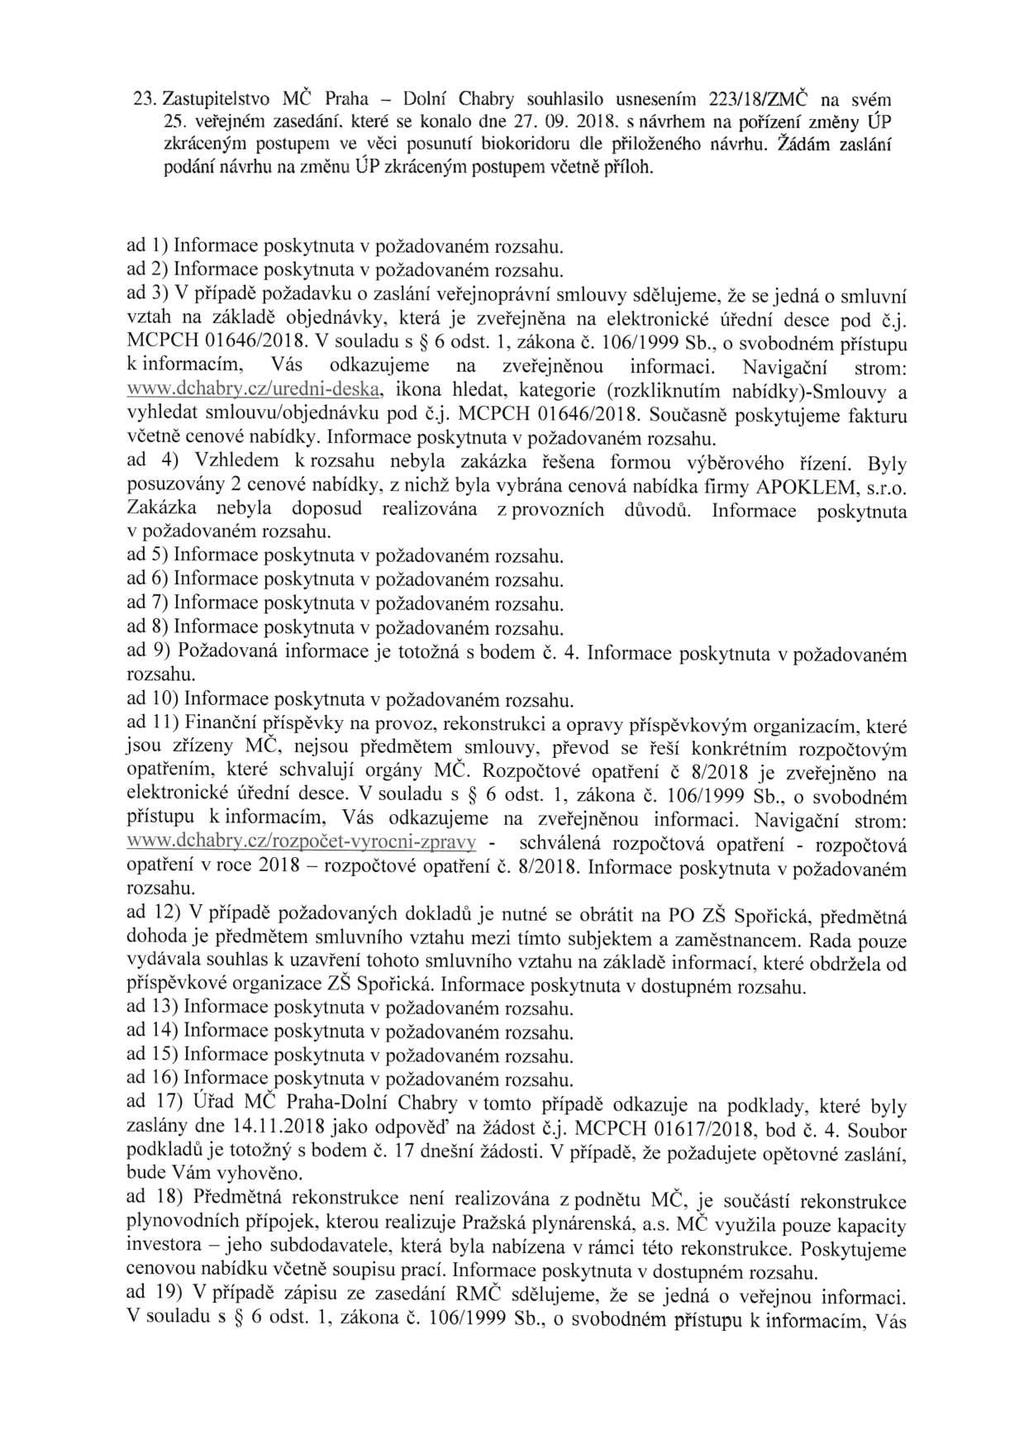 23. Zastupitelstvo MČ Praha - Dolní Chabry souhlasilo usnesením 223/18/ZMČ na svém 25. veřejném zasedání. které se konalo dne 27. 09. 2018.